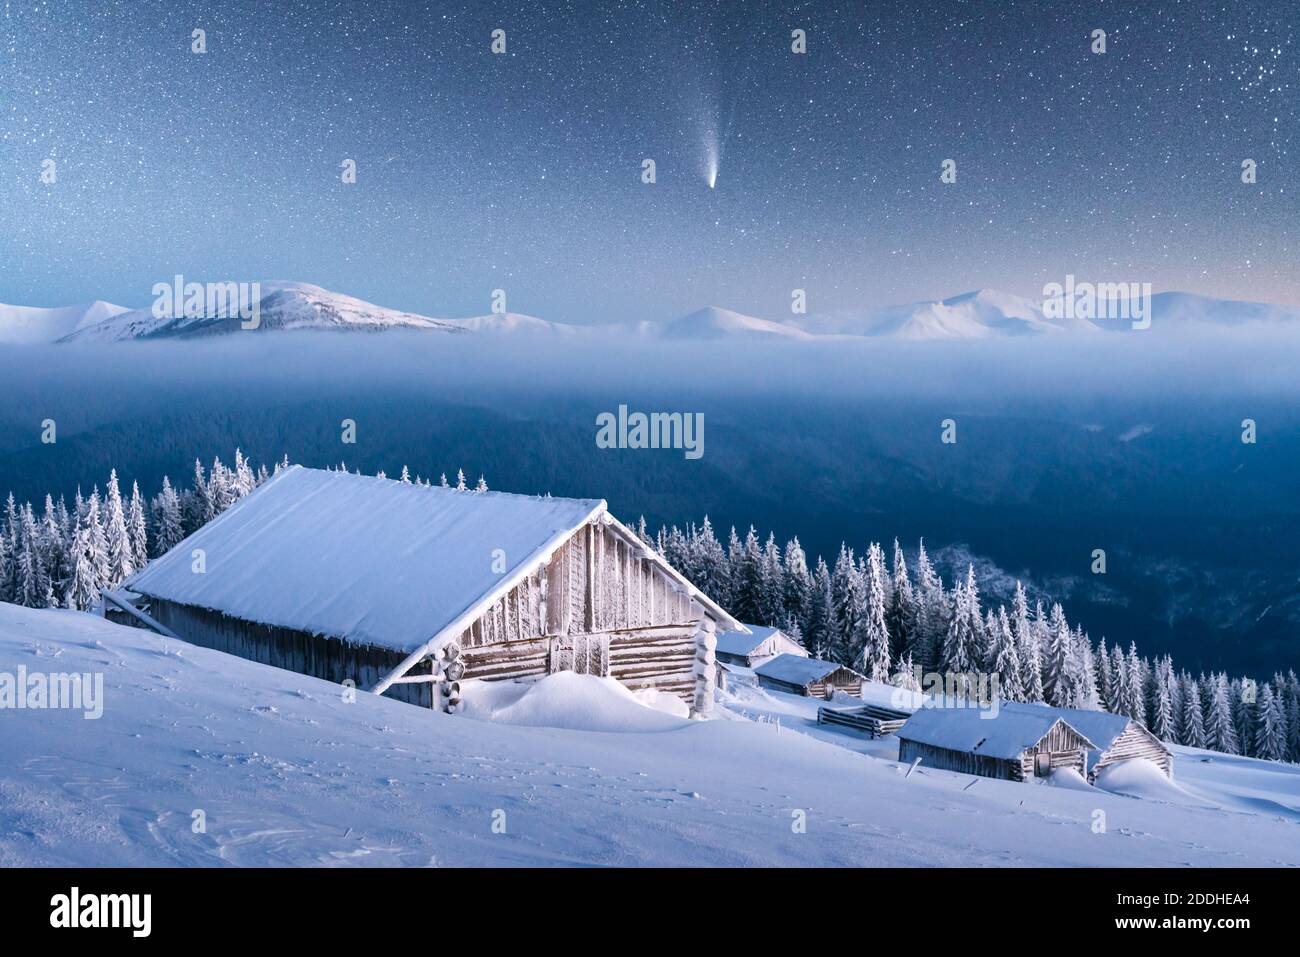 Fantastico paesaggio invernale con casa in legno in montagne innevate. Cielo stellato con cometa e capanna innevata. Vacanza di Natale e concetto di vacanza invernale Foto Stock